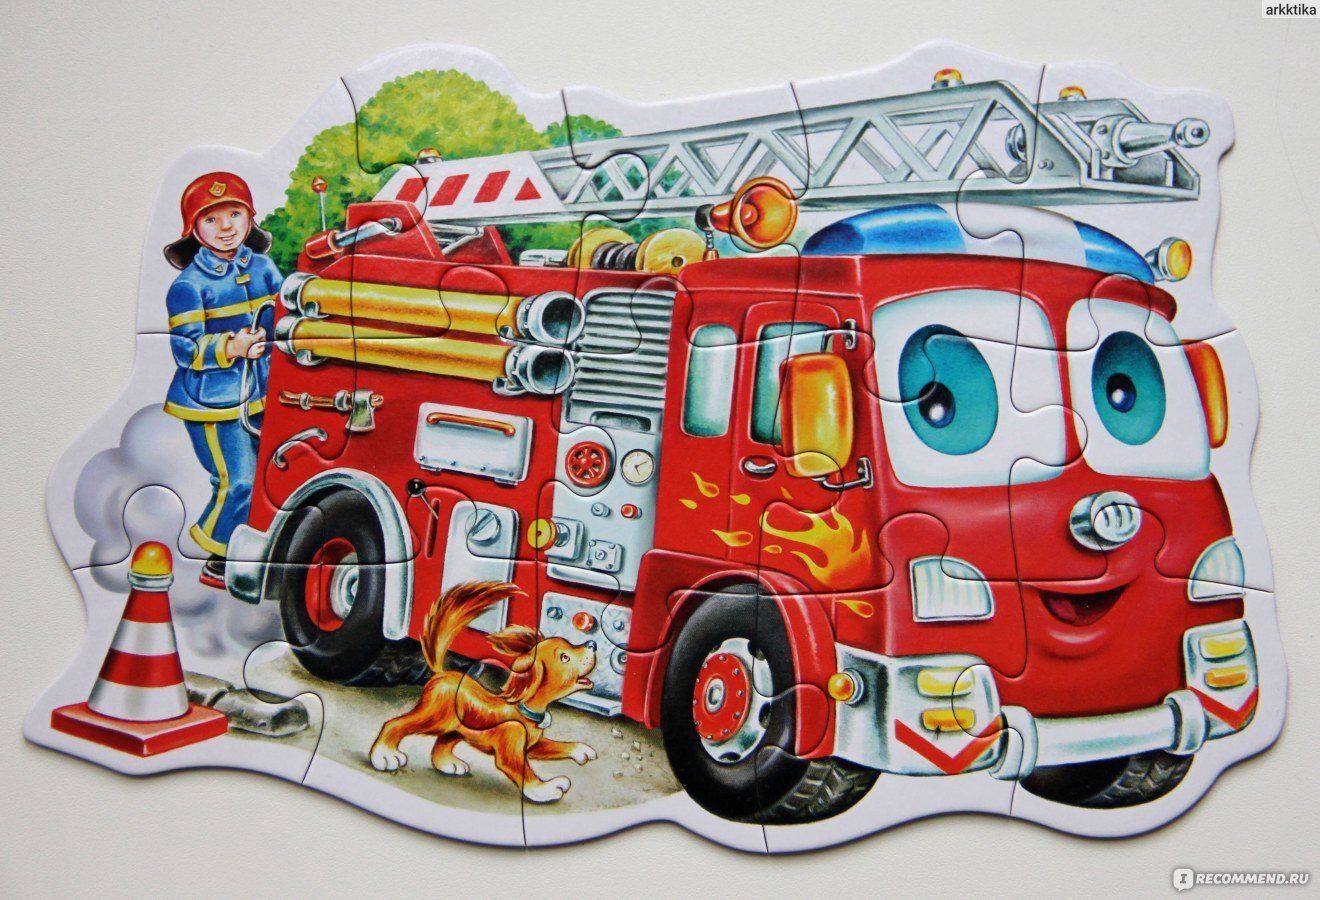 Автомобиль пожарный тема. Напольный пазл "пожарная машина" (24 Эл.) Melissa Doug 436. Пазлы Castorland пожарная машина. Пазл пожарная машина для детей. Пазл пожарный для детей.